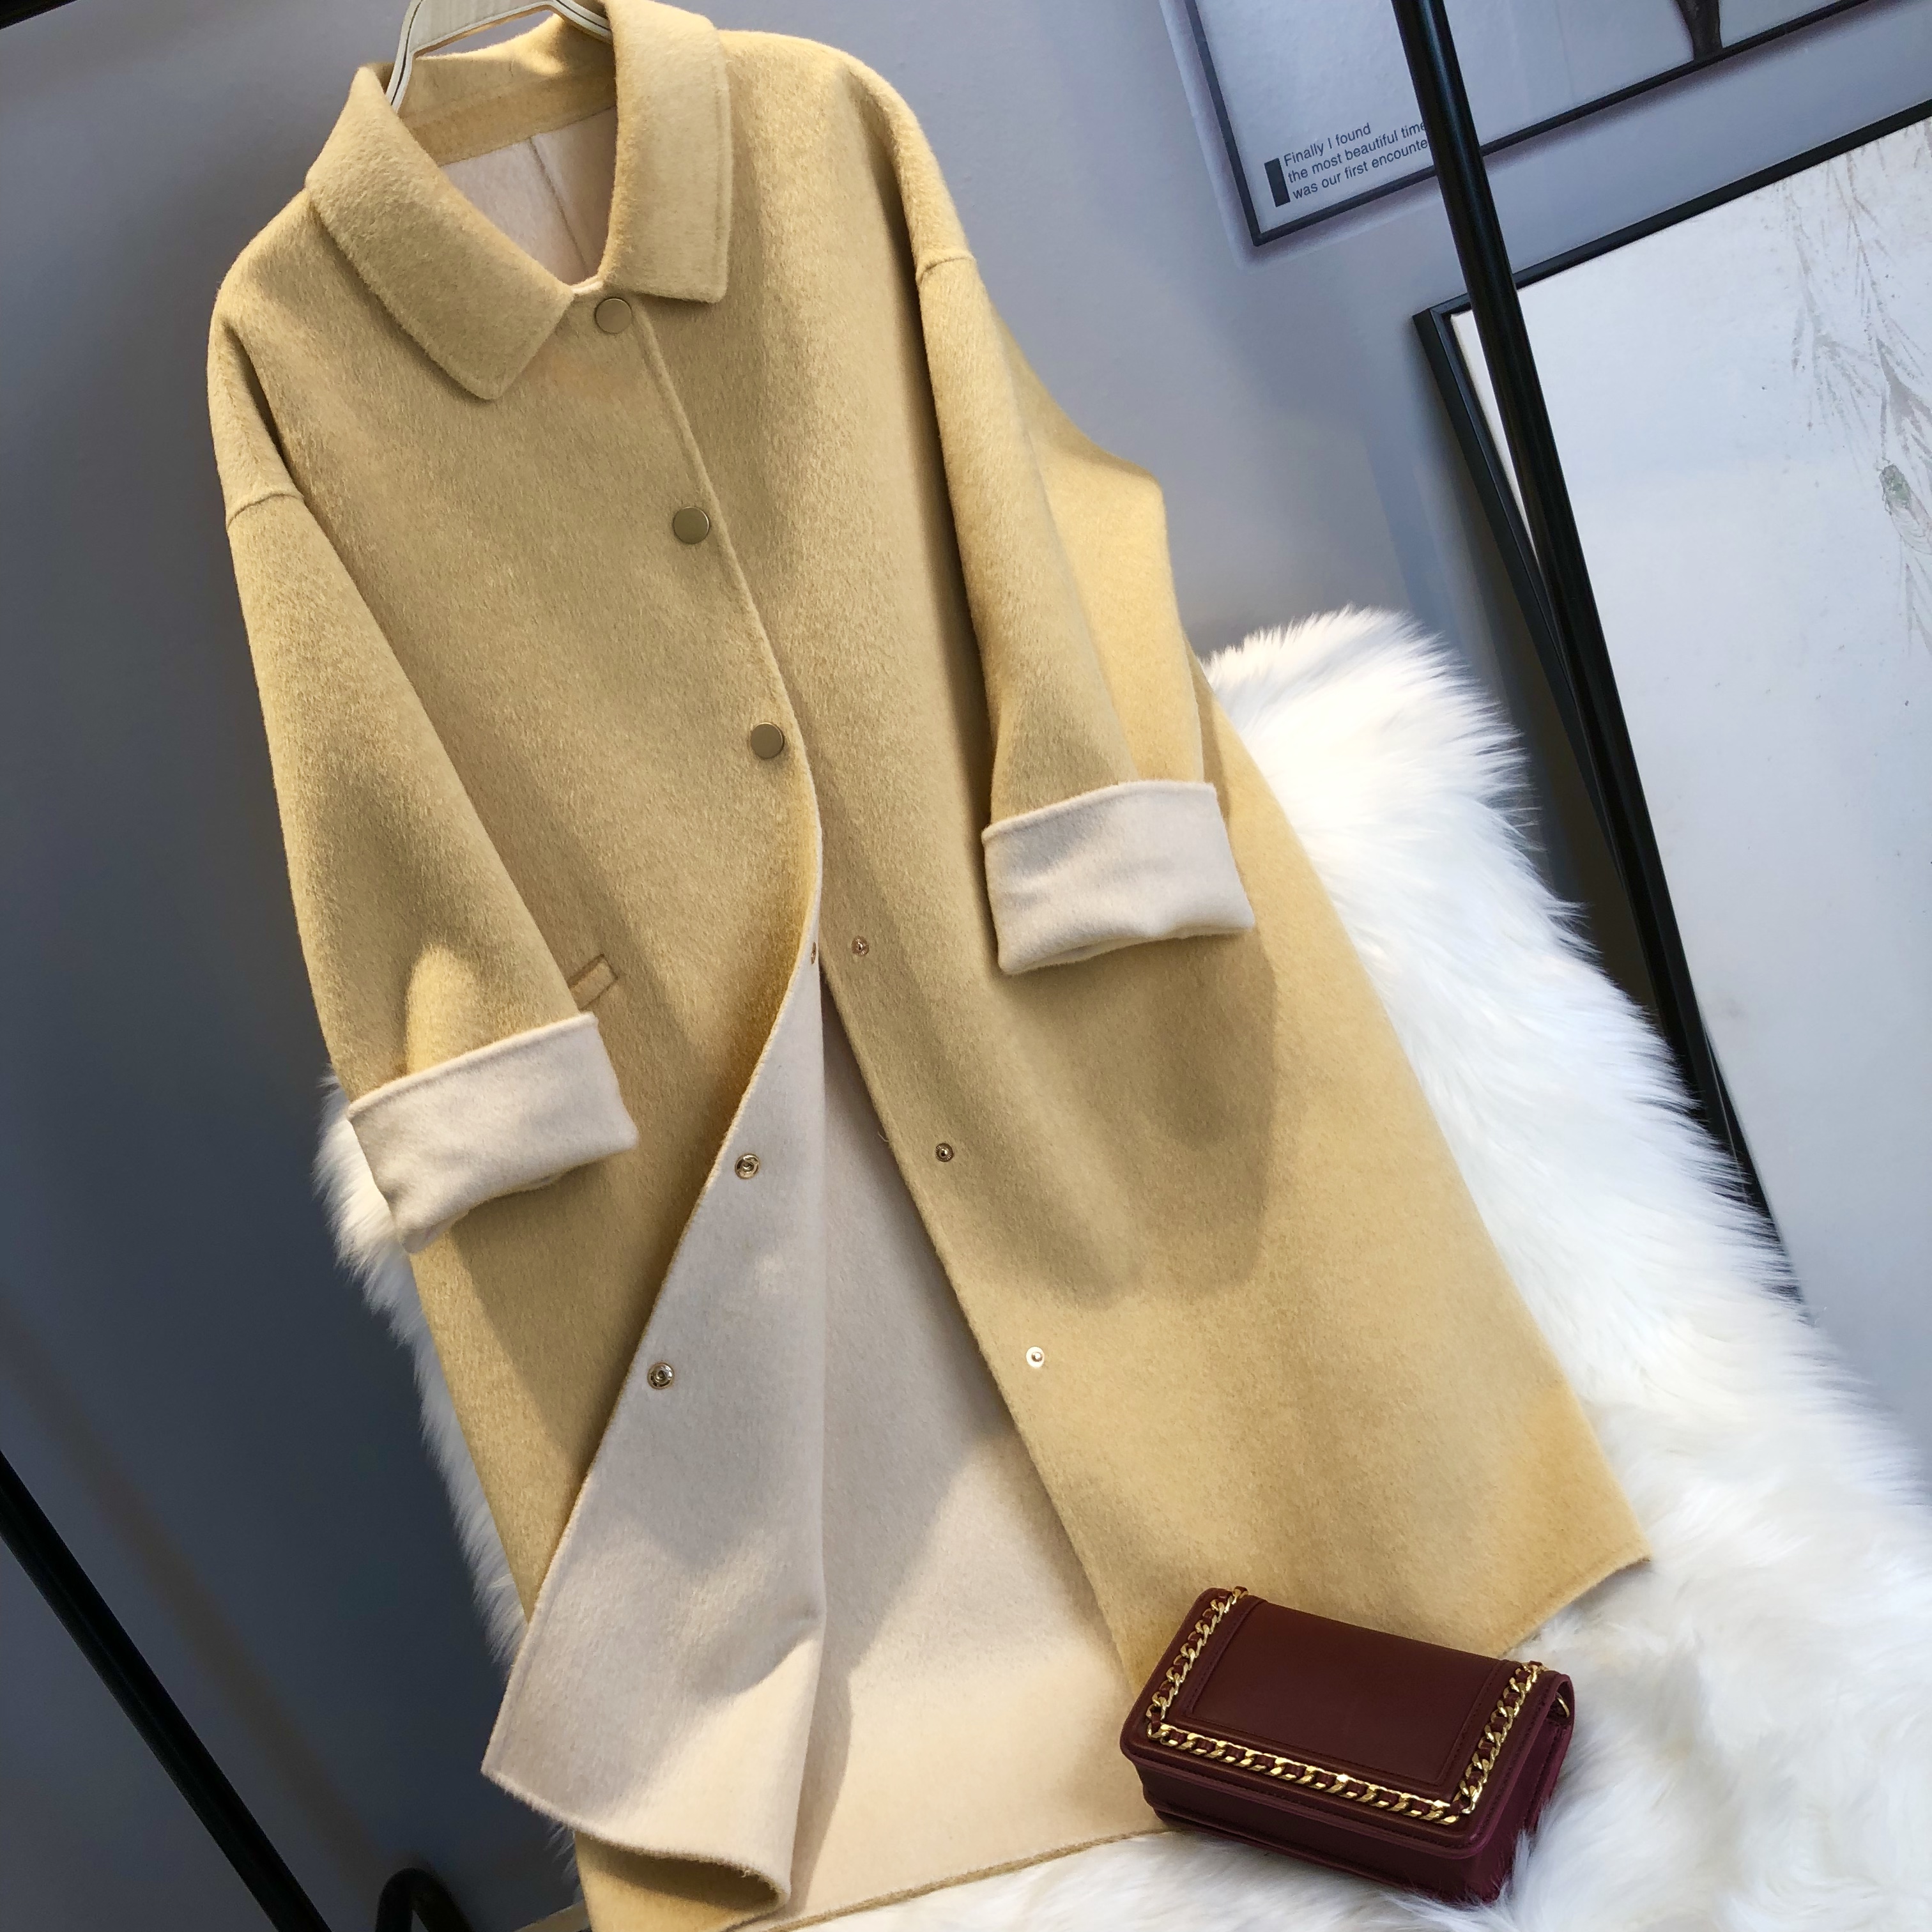 香奈儿大衣新款图片 羊绒大衣外套 CHANEL服装批发市场 - 七七奢侈品